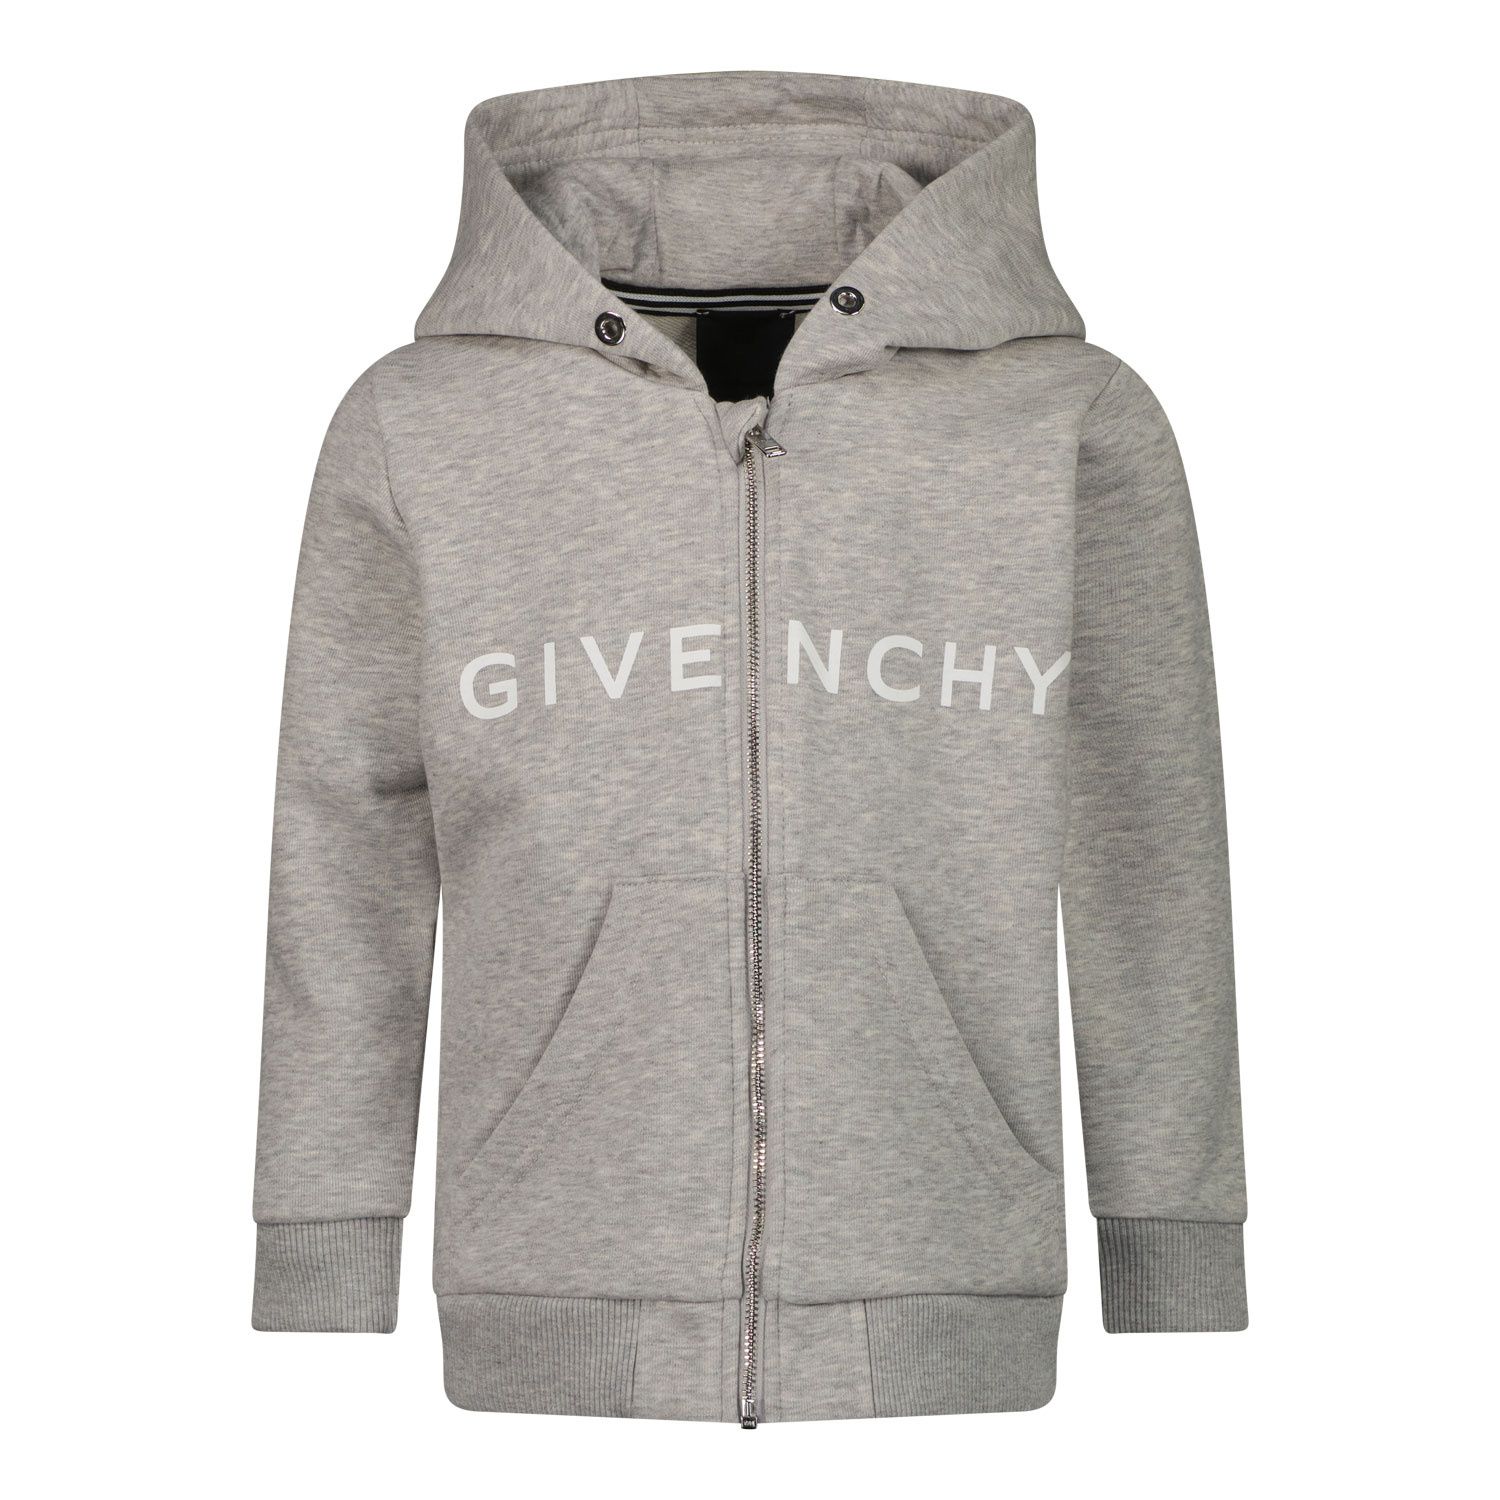 Afbeelding van Givenchy H05199 baby vest grijs